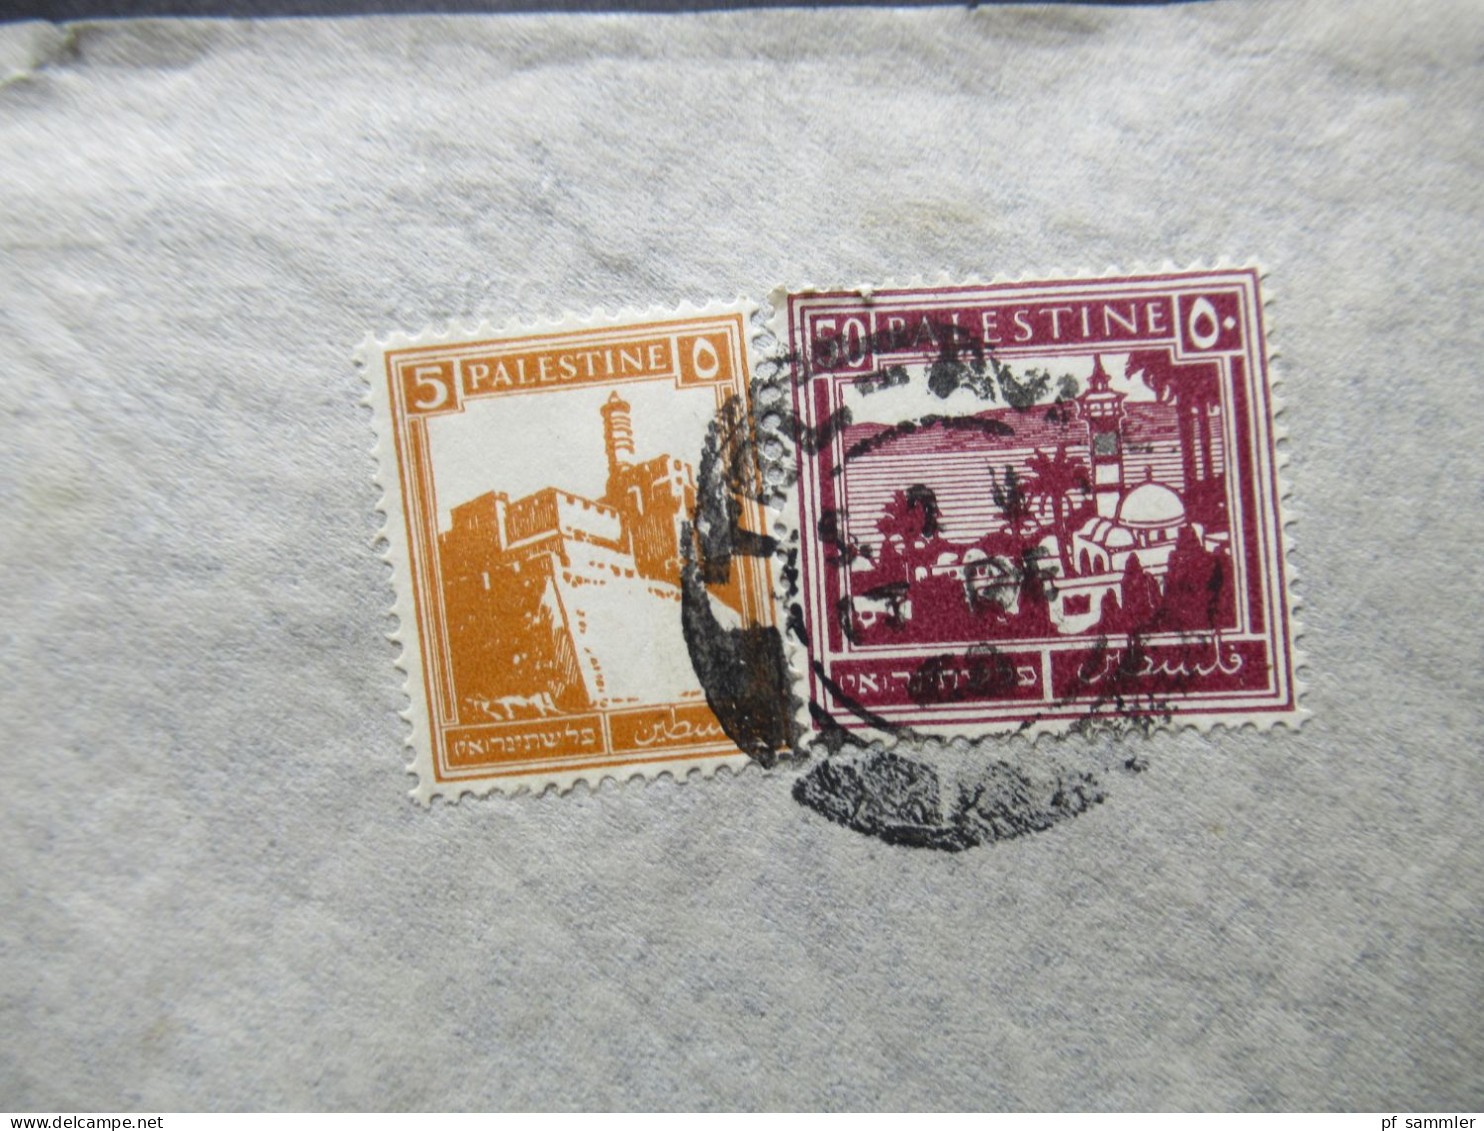 Paästina / Palestine Um 1930 By Air Mail / Luftpost In Die CSR Stempel Tel Aviv Umschlag H. Schrenzel Orient Agency - Palästina